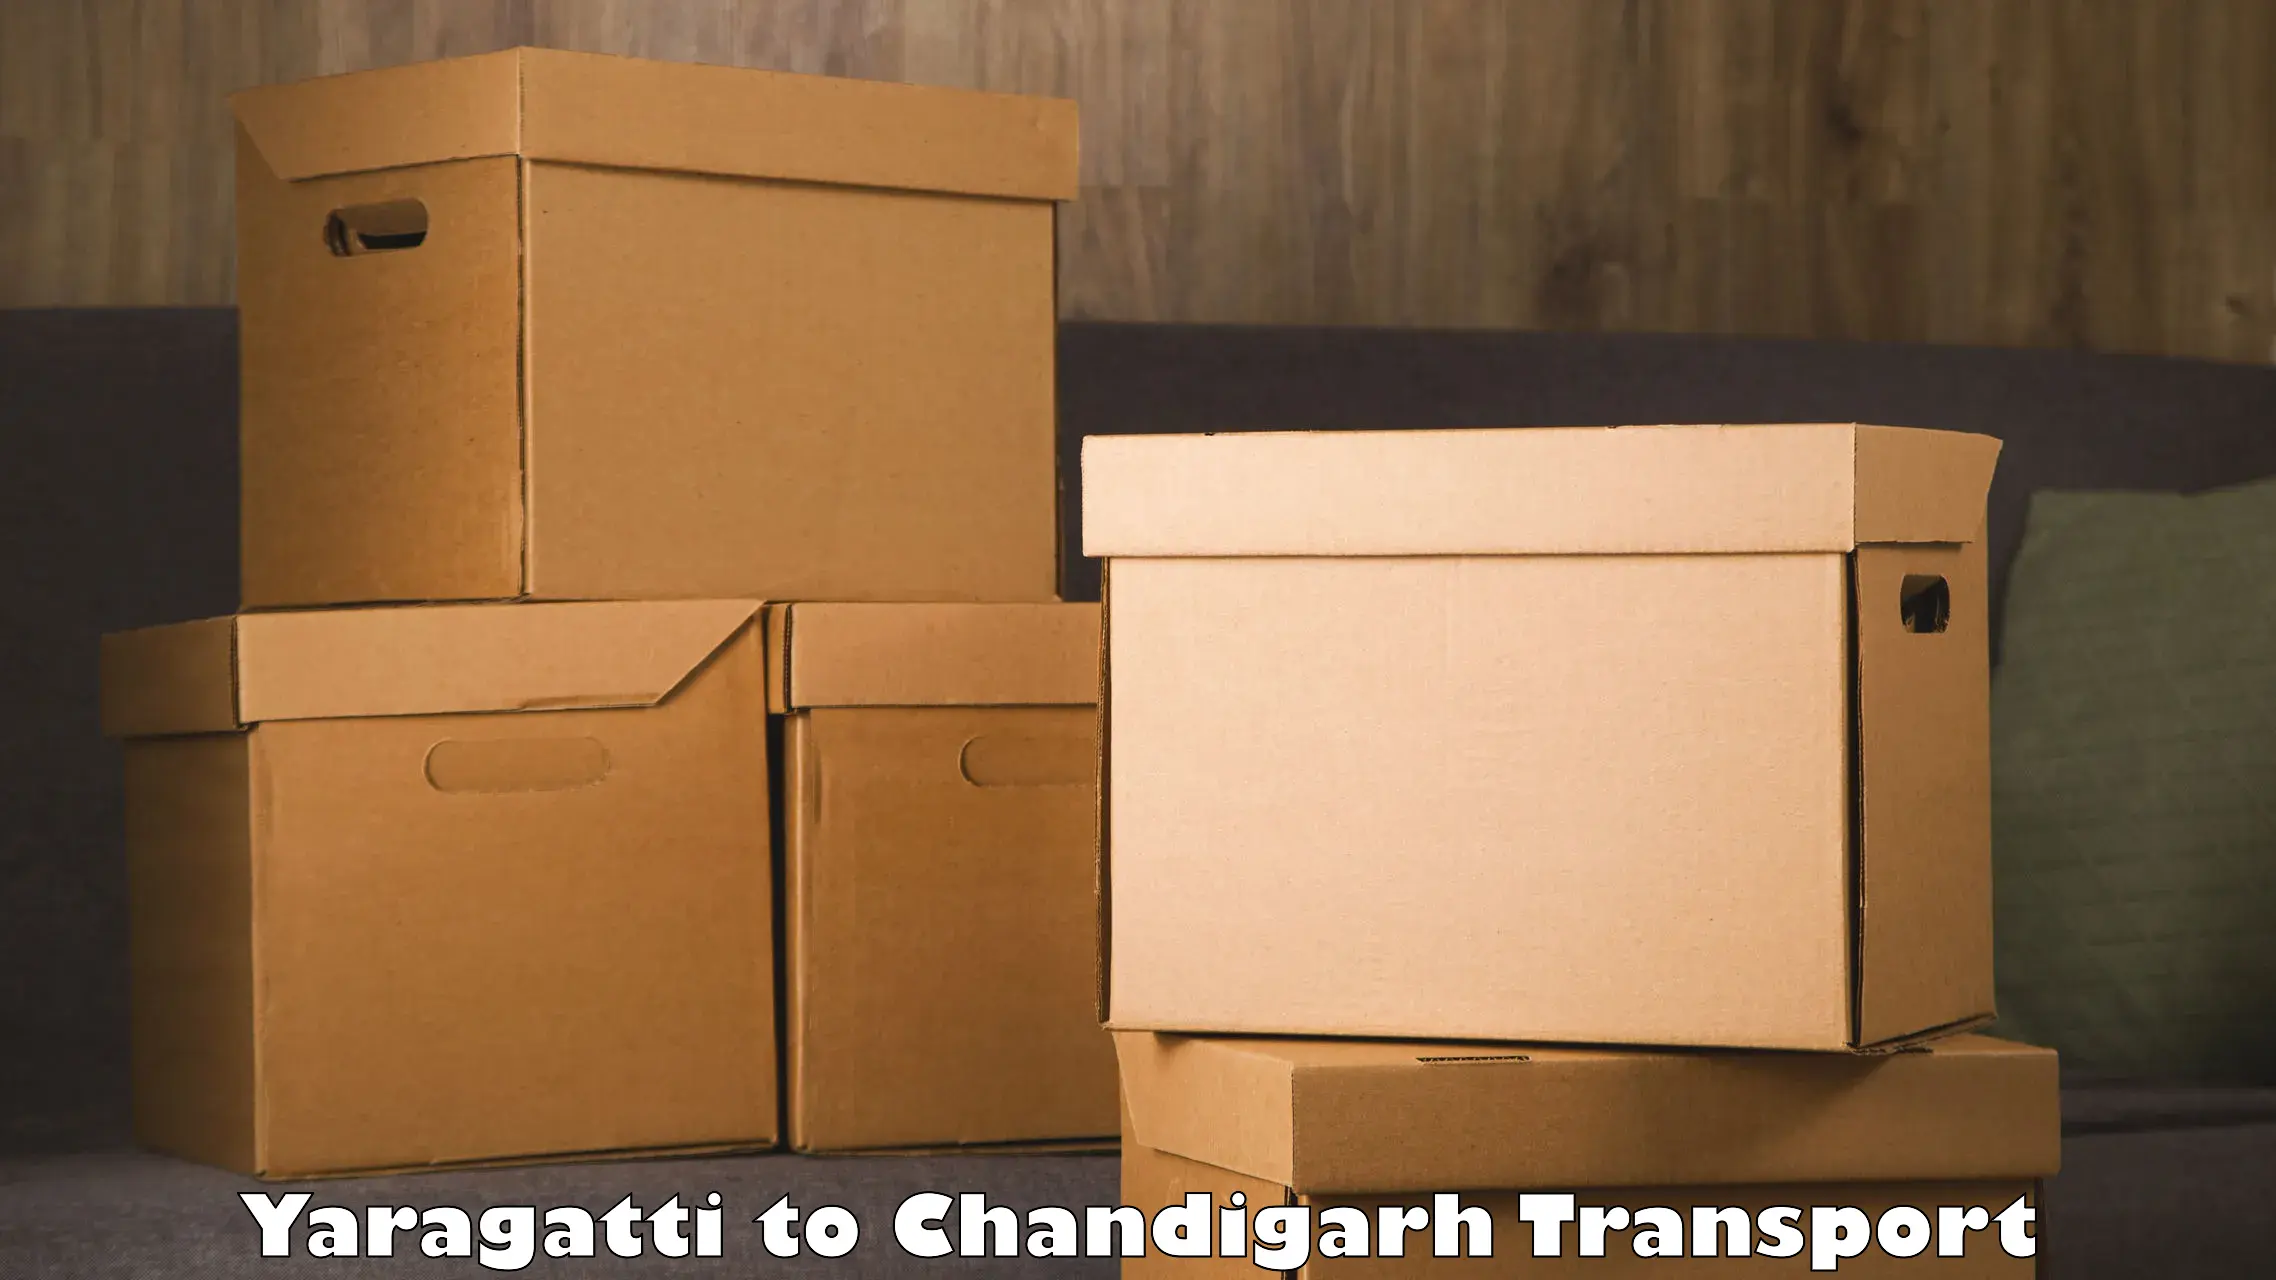 Cargo train transport services Yaragatti to Chandigarh